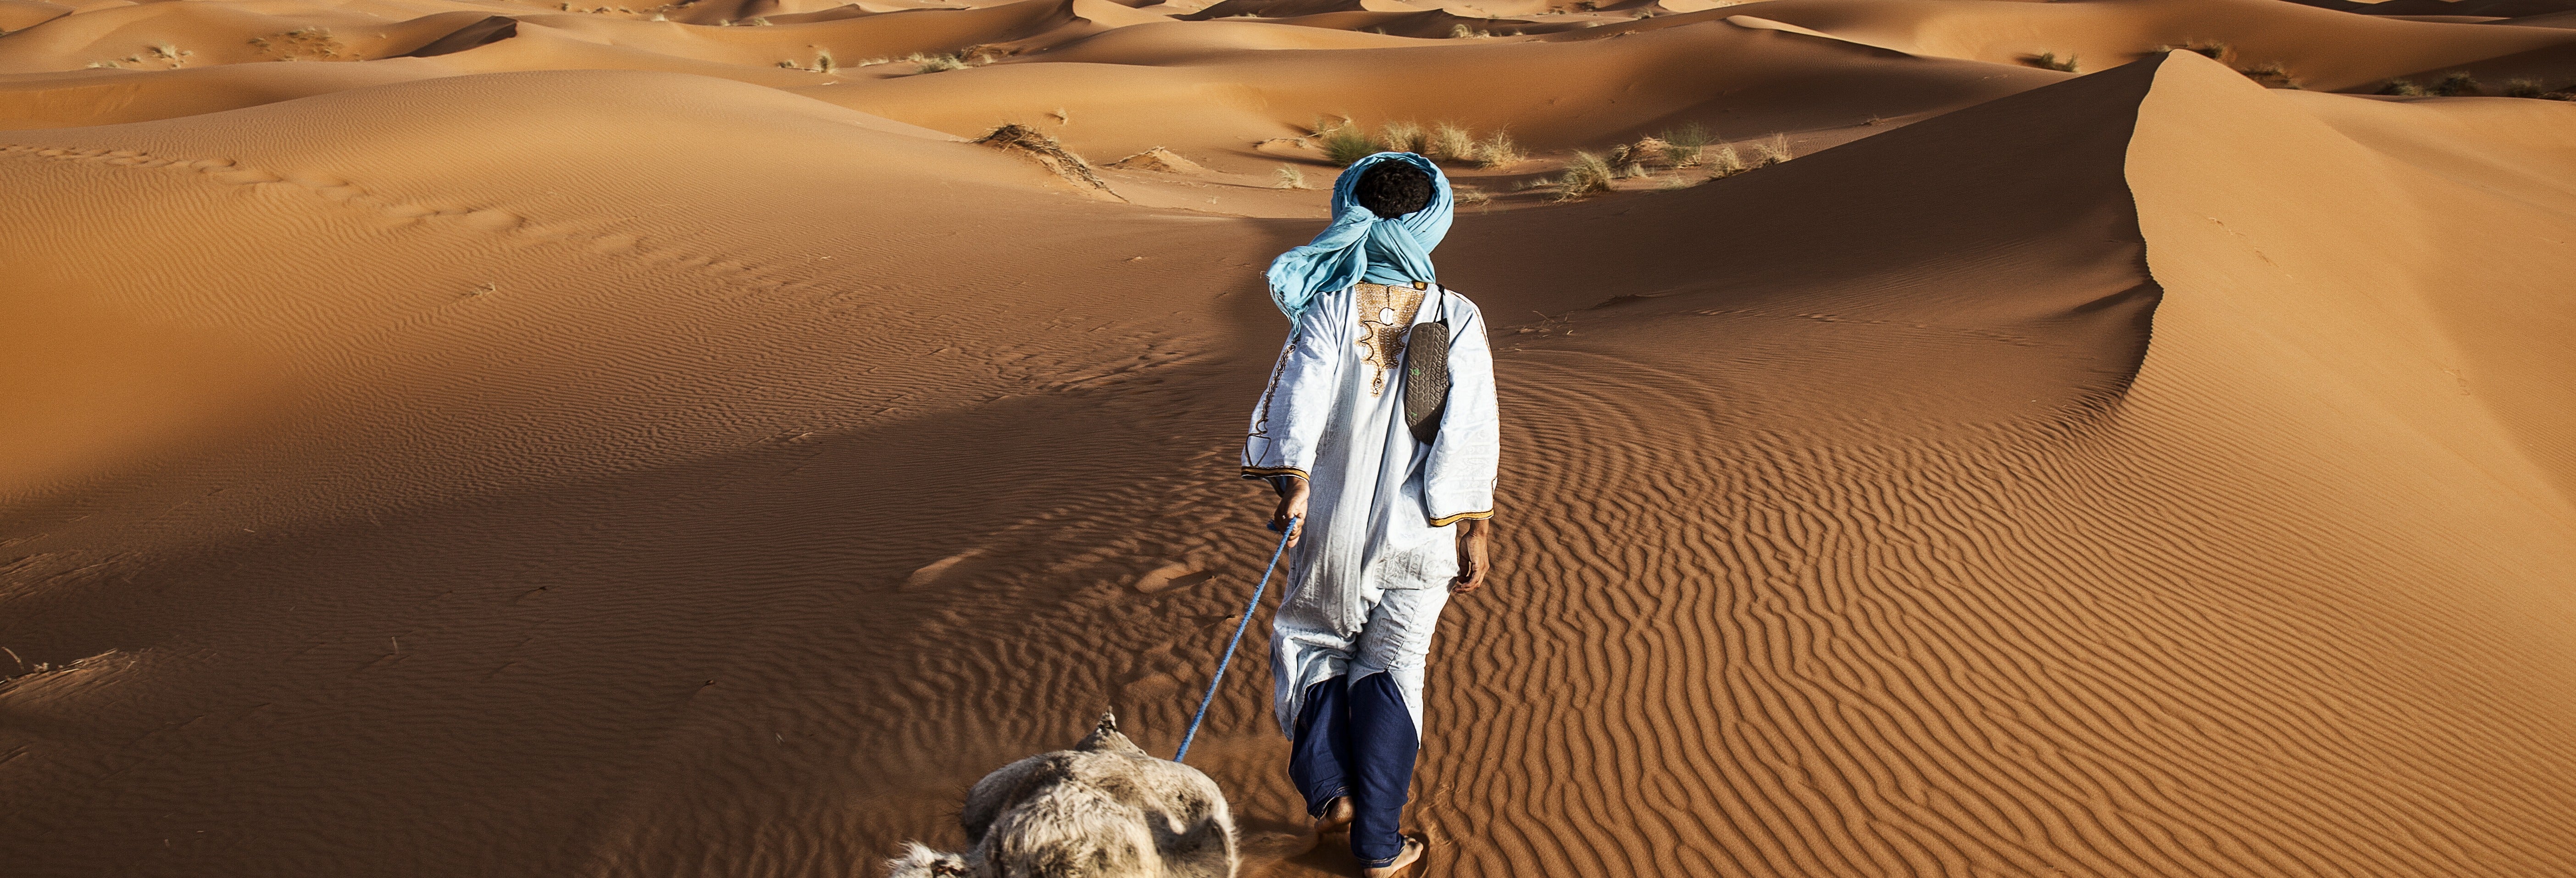 Excursión de 3 días al desierto de Merzouga